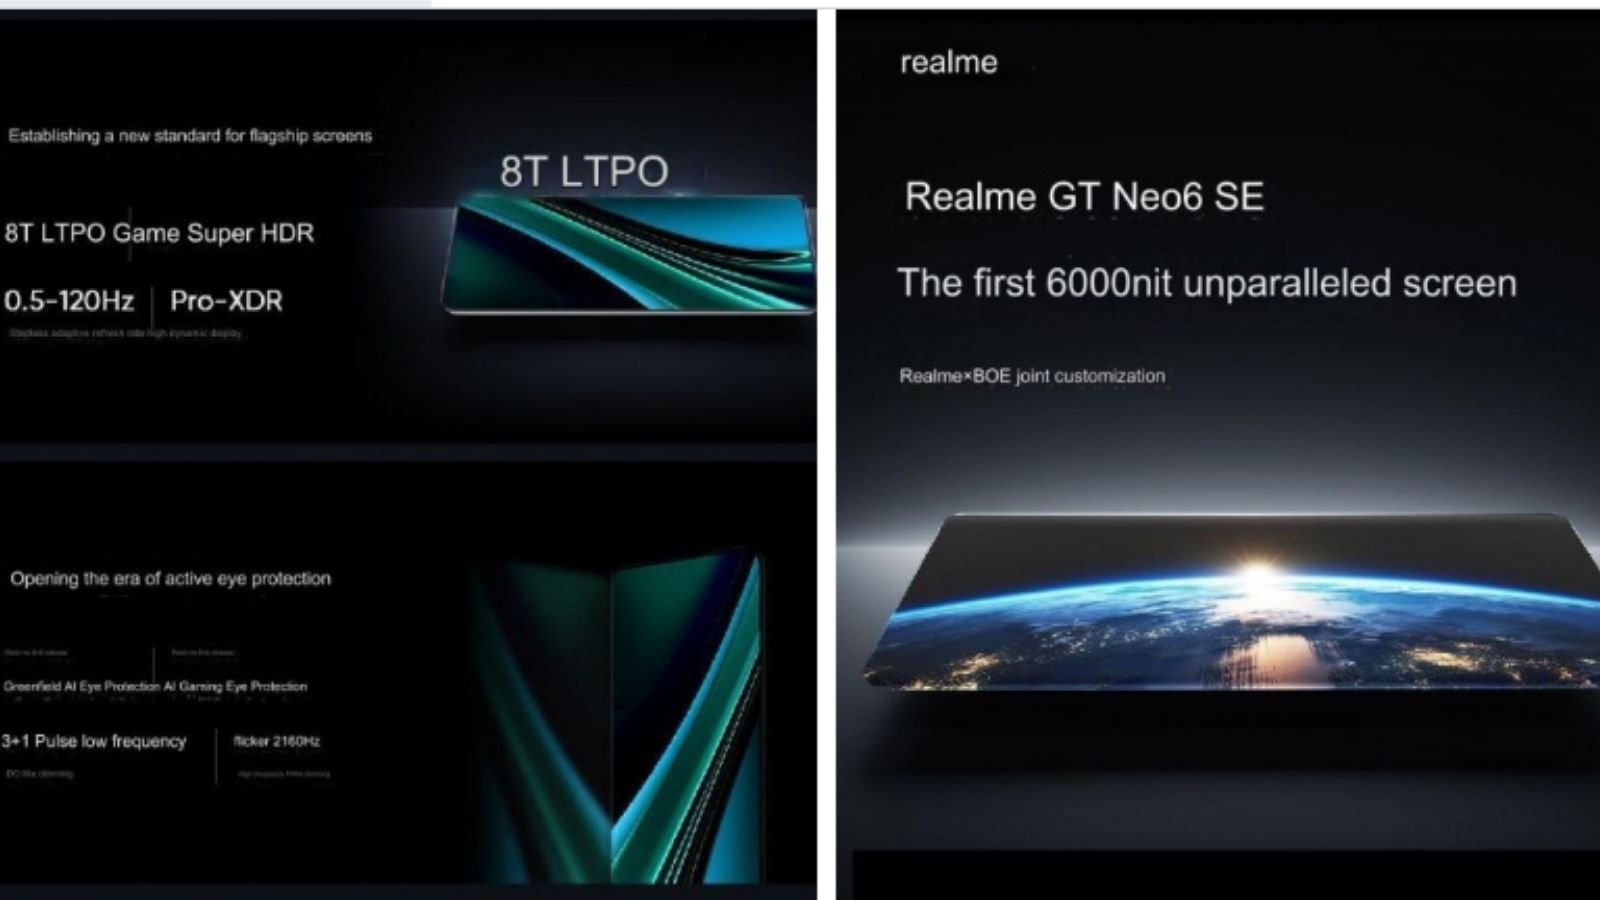 Ekranıyla ön plana çıkacak Realme GT Neo 6 SE'nin özellikleri ve tasarım bilgileri açıklandı. Realme şirketi, akıllı telefon işindeki çalışmalarına son hızla devam etmekte. 